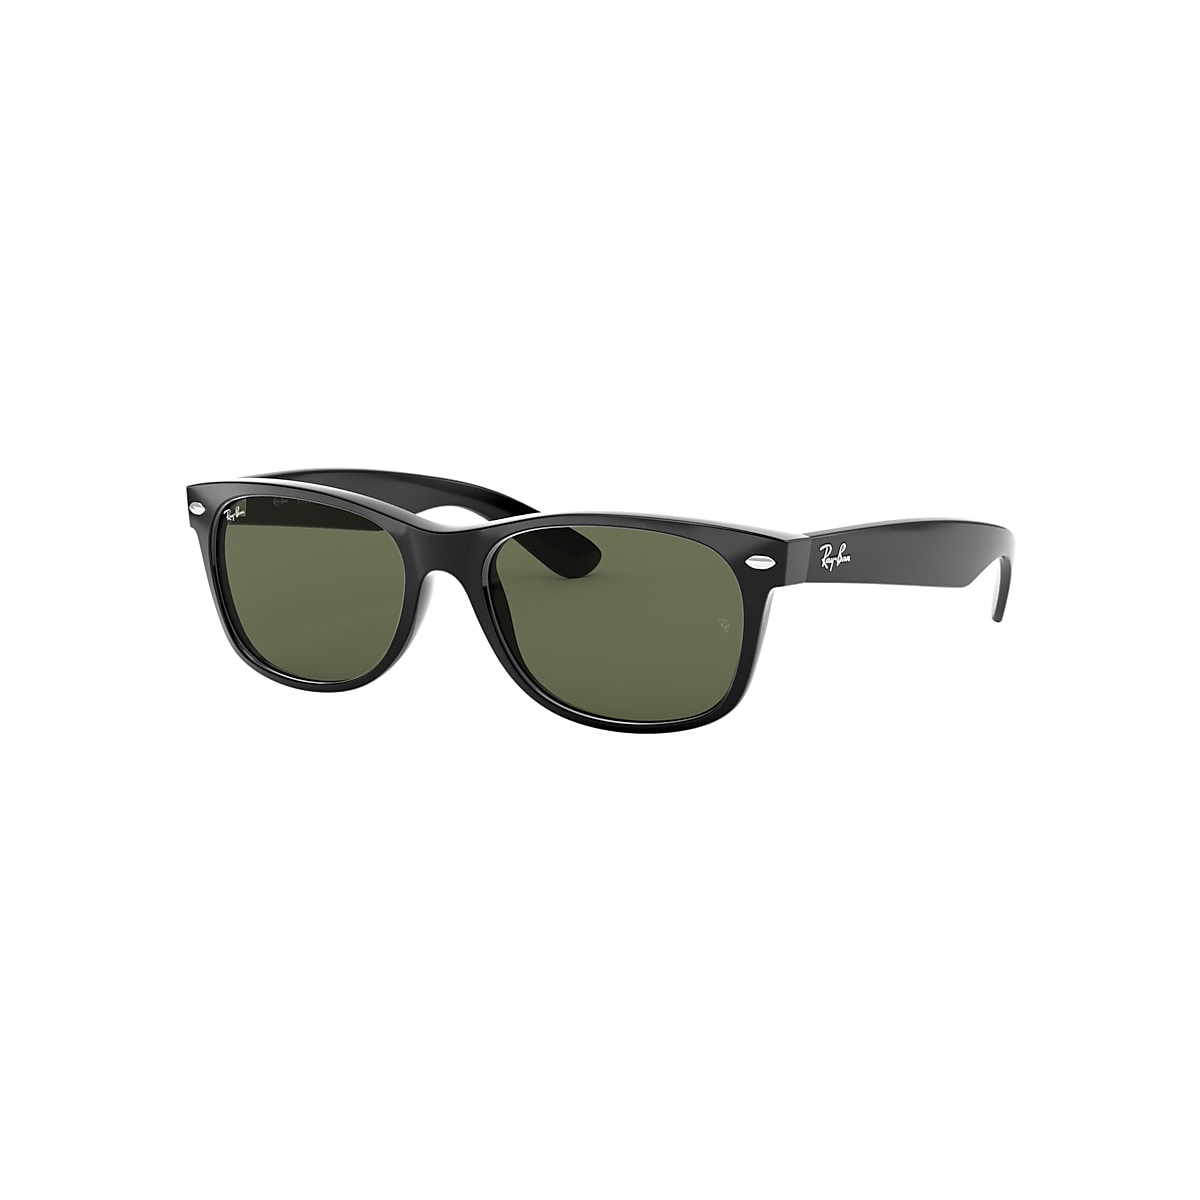 Spiller skak Opfattelse Maleri NEW WAYFARER CLASSIC Sunglasses in Black and Green - RB2132 | Ray-Ban® US